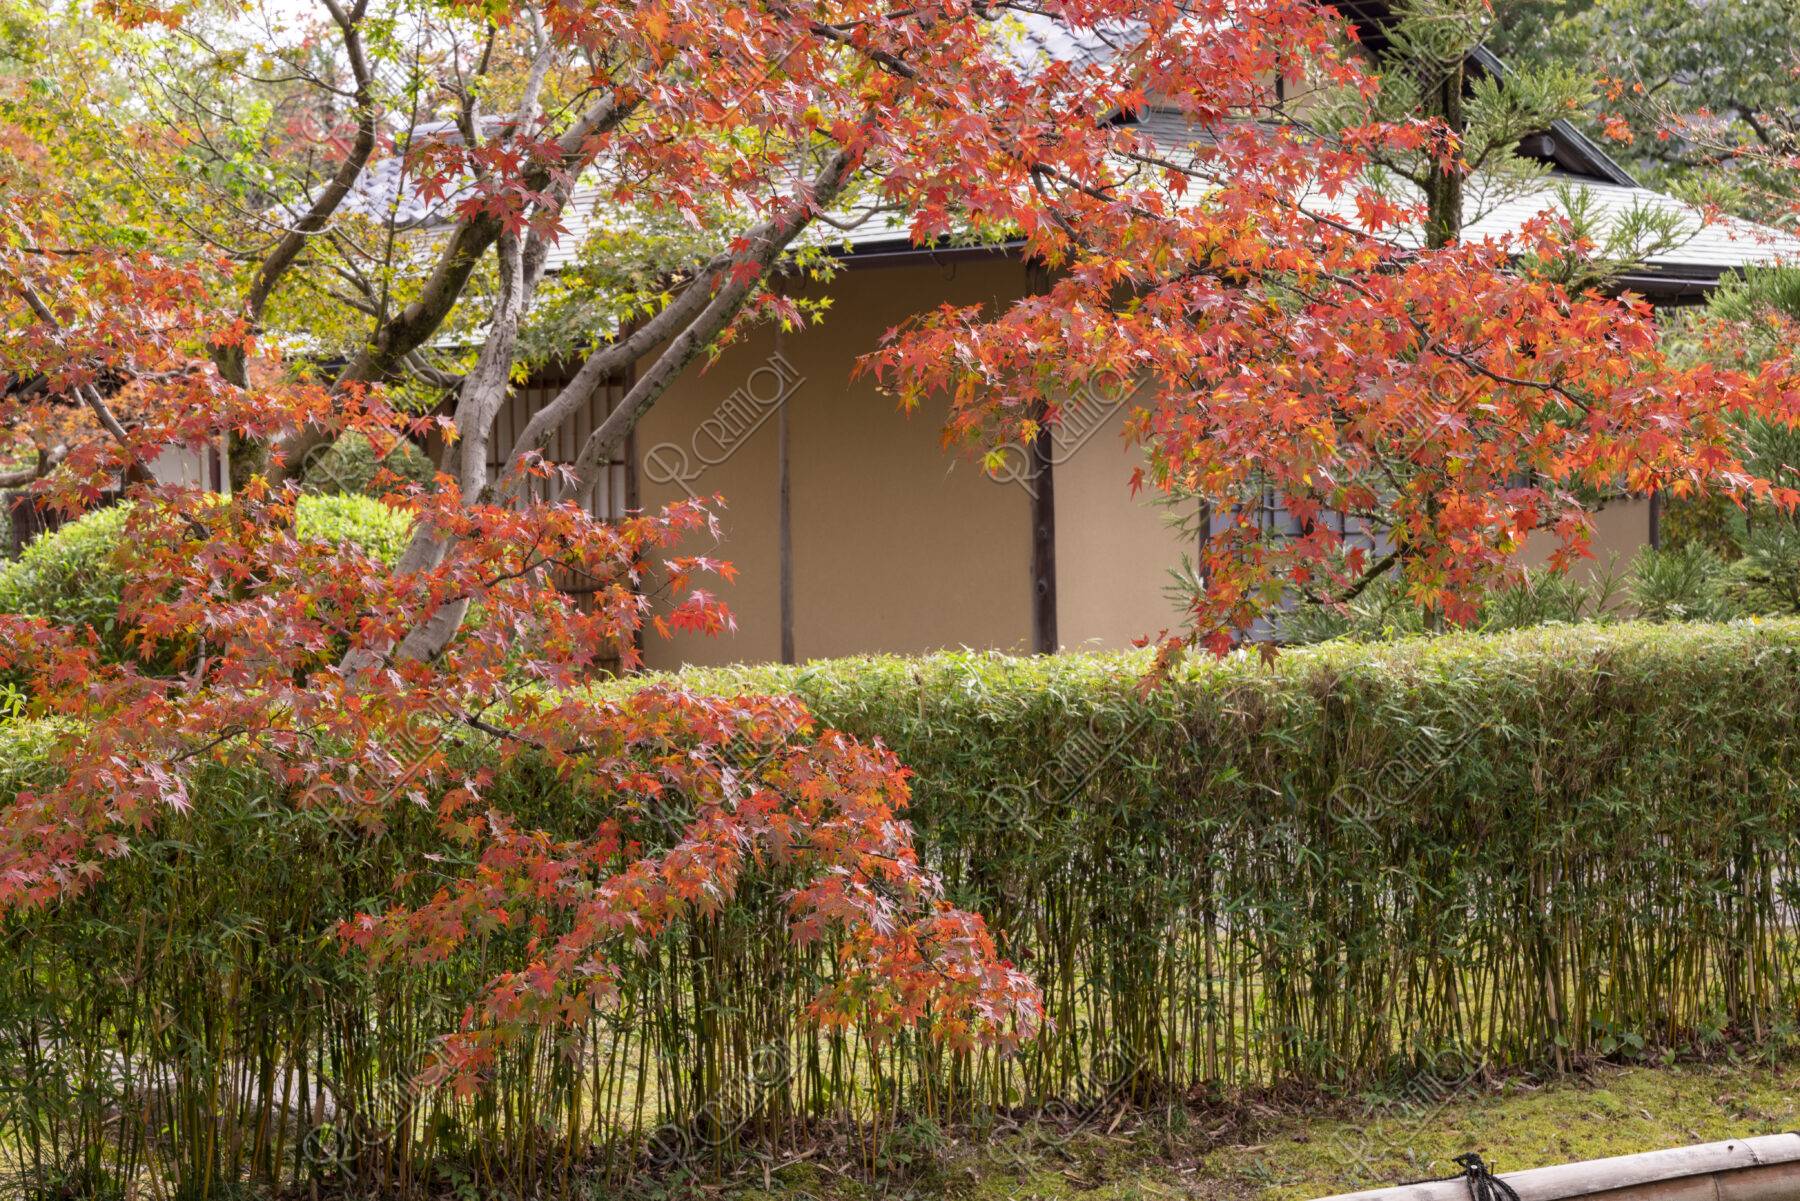 松花堂 茶室竹隠と紅葉